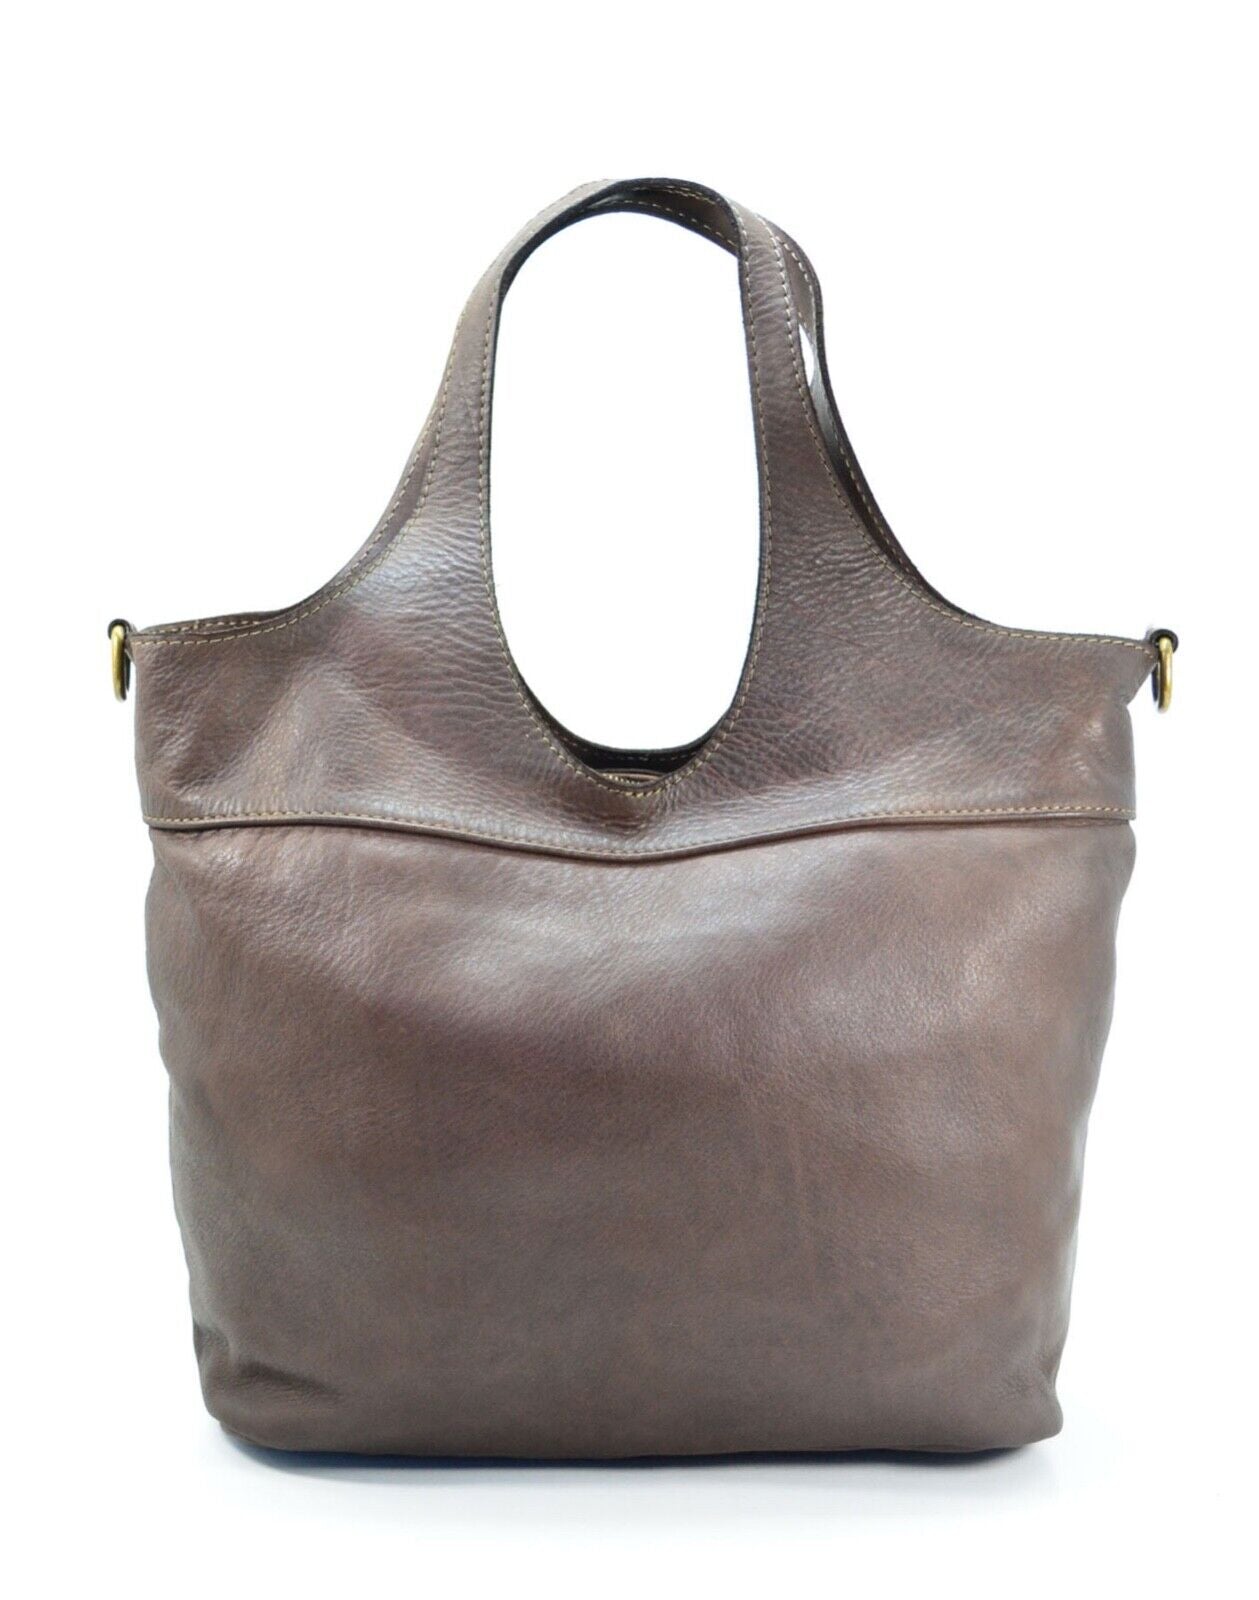 BZNA Bag Wiara Braun Italy Designer Damen Handtasche Schultertasche Tasche